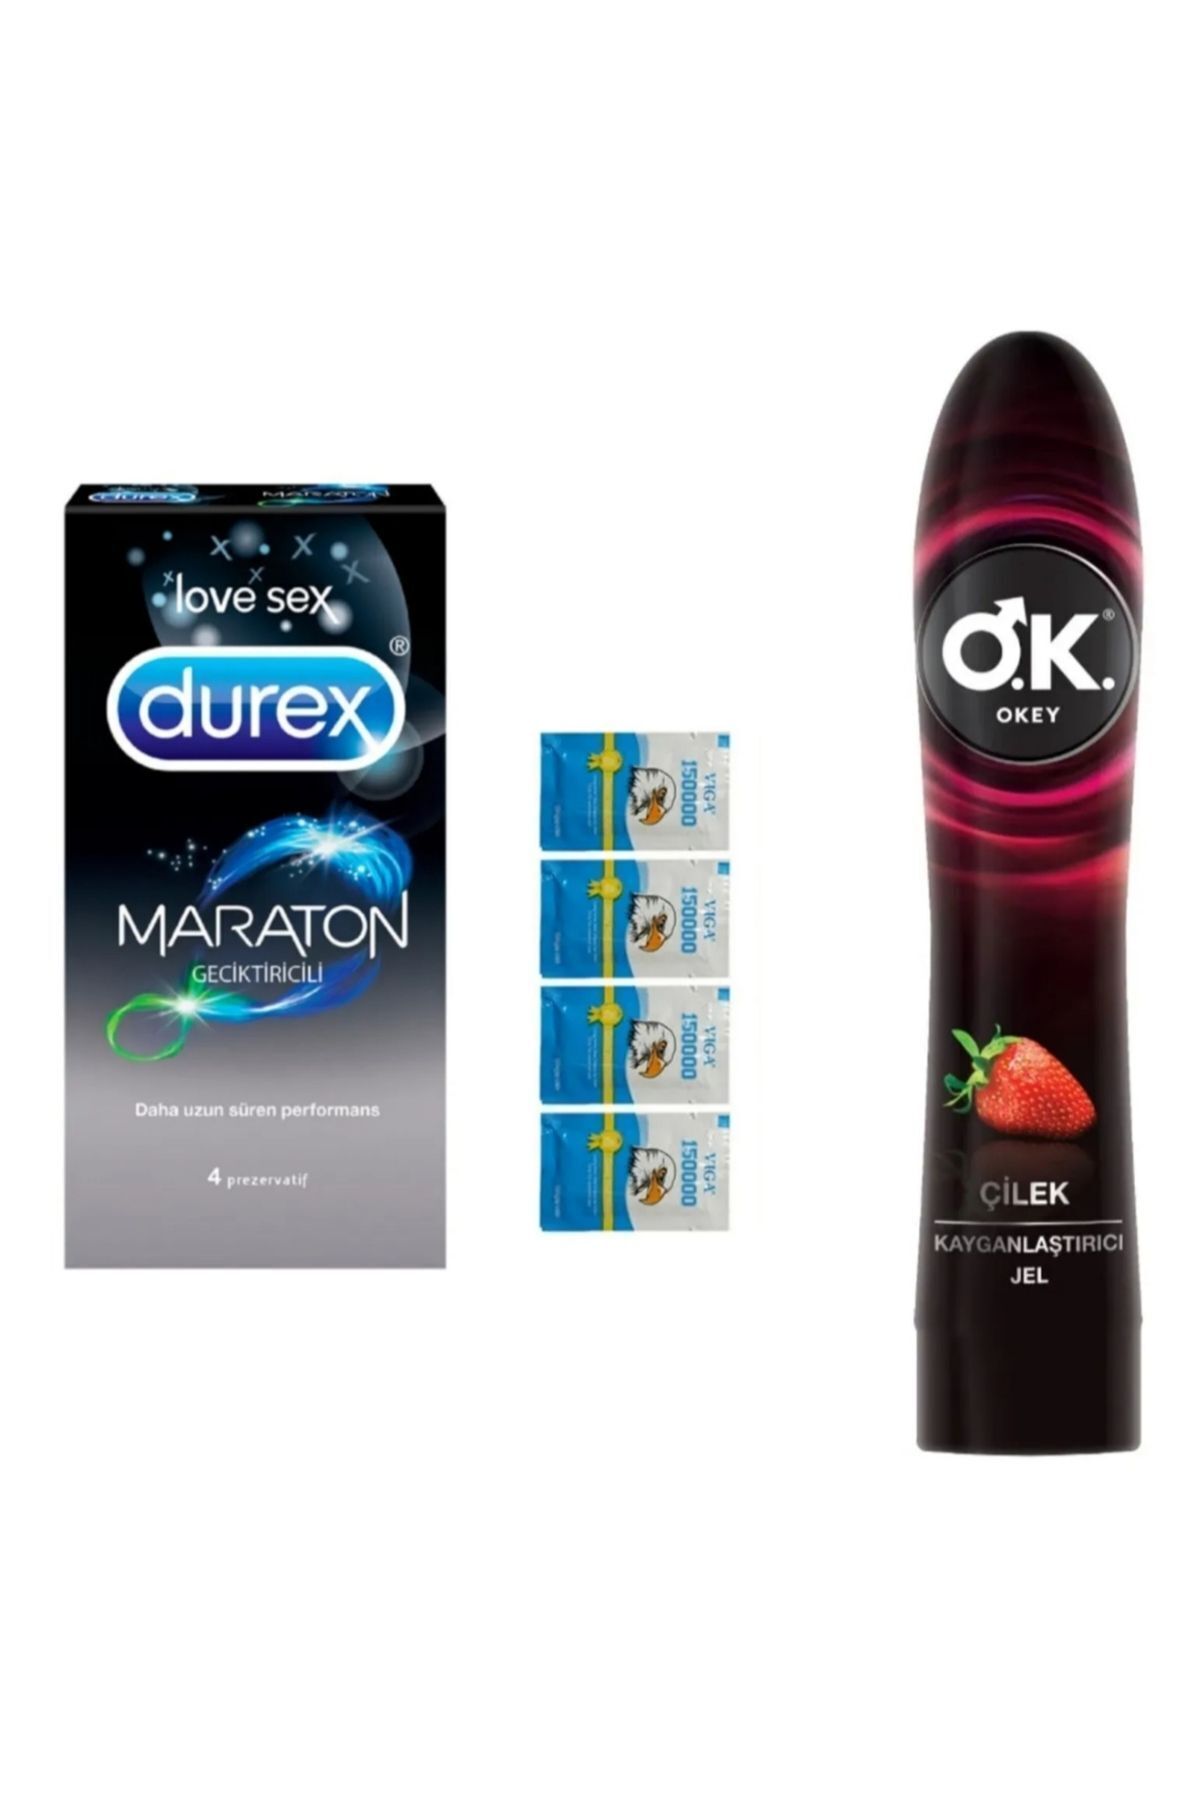 Durex Maraton HAPPY prezervatif4 lü+li mendlil+çilek hazzı kayganlaştılı